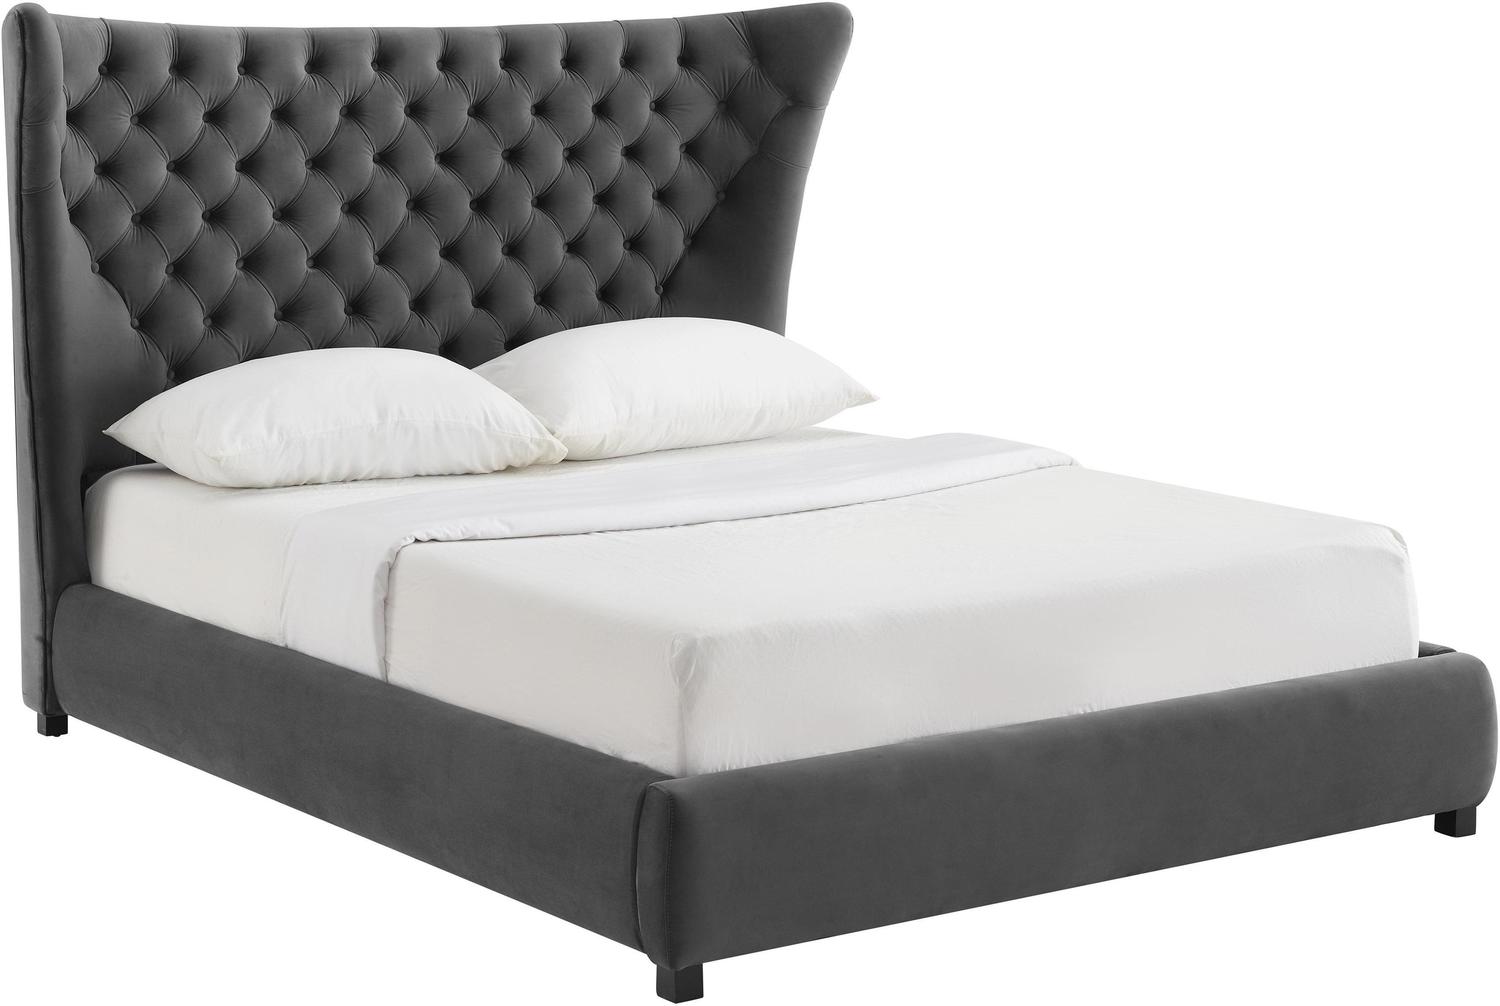  Tov Furniture Beds Beds Grey